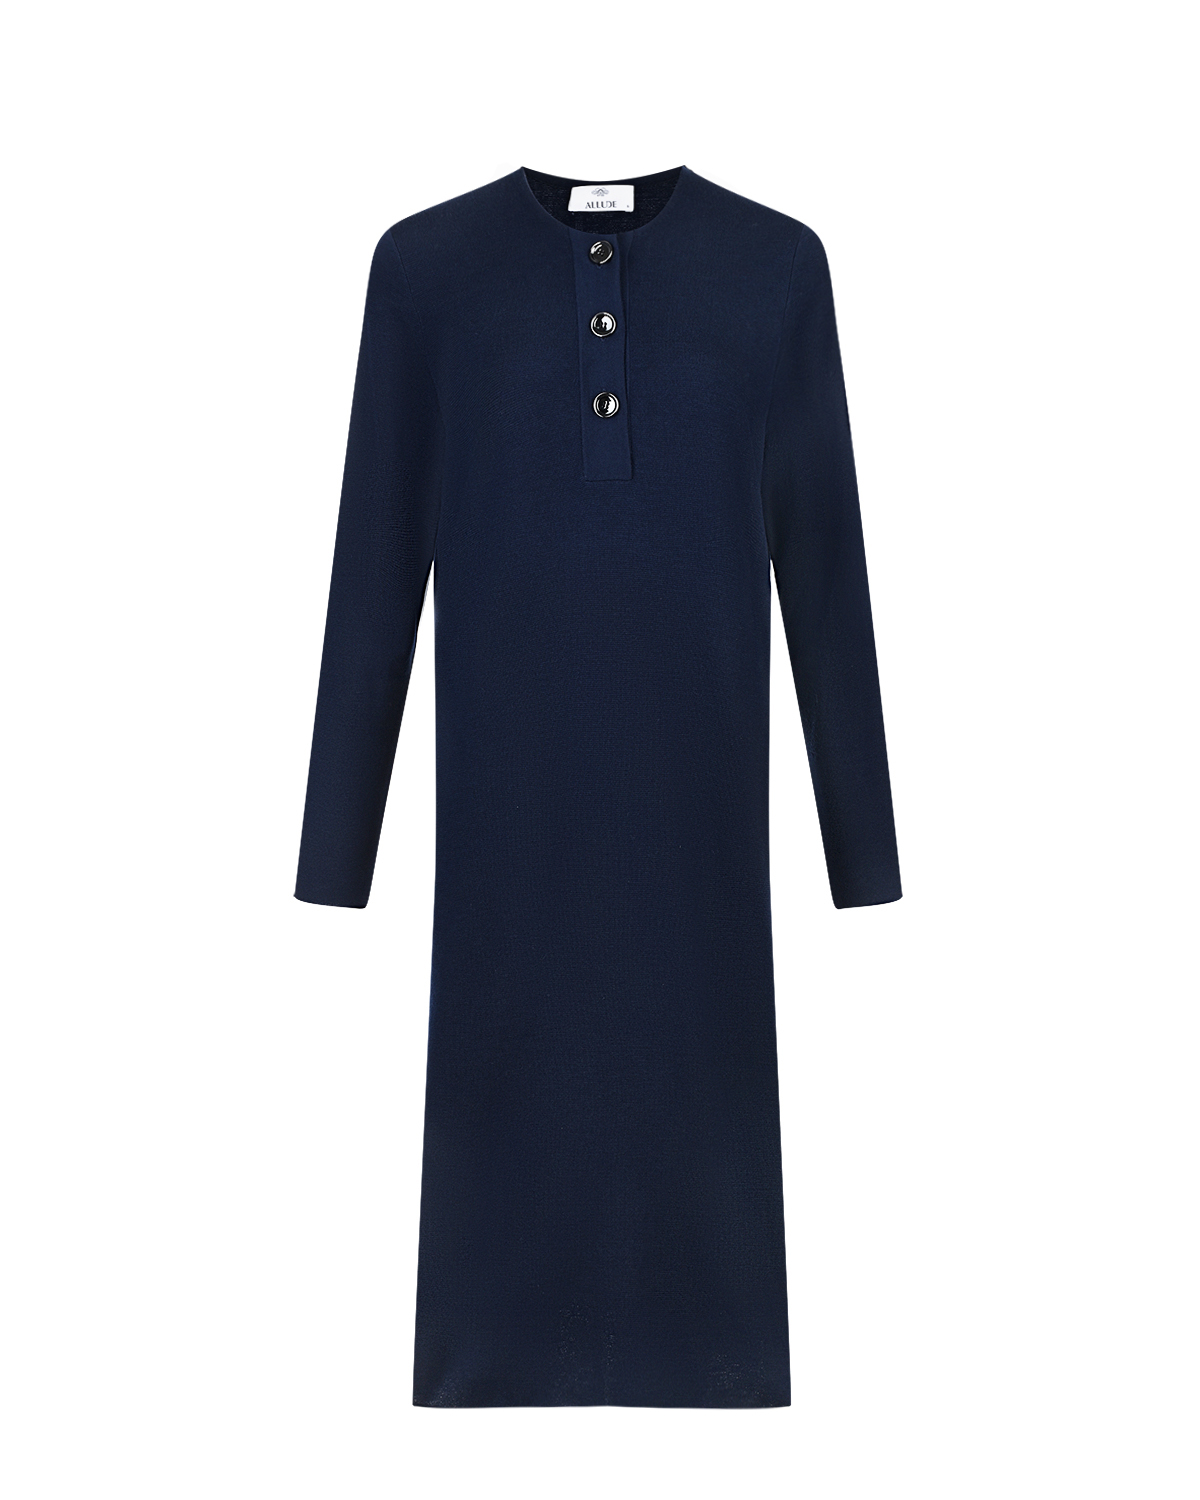 Синее платье из шерсти мериноса Allude, размер 38, цвет синий - фото 1